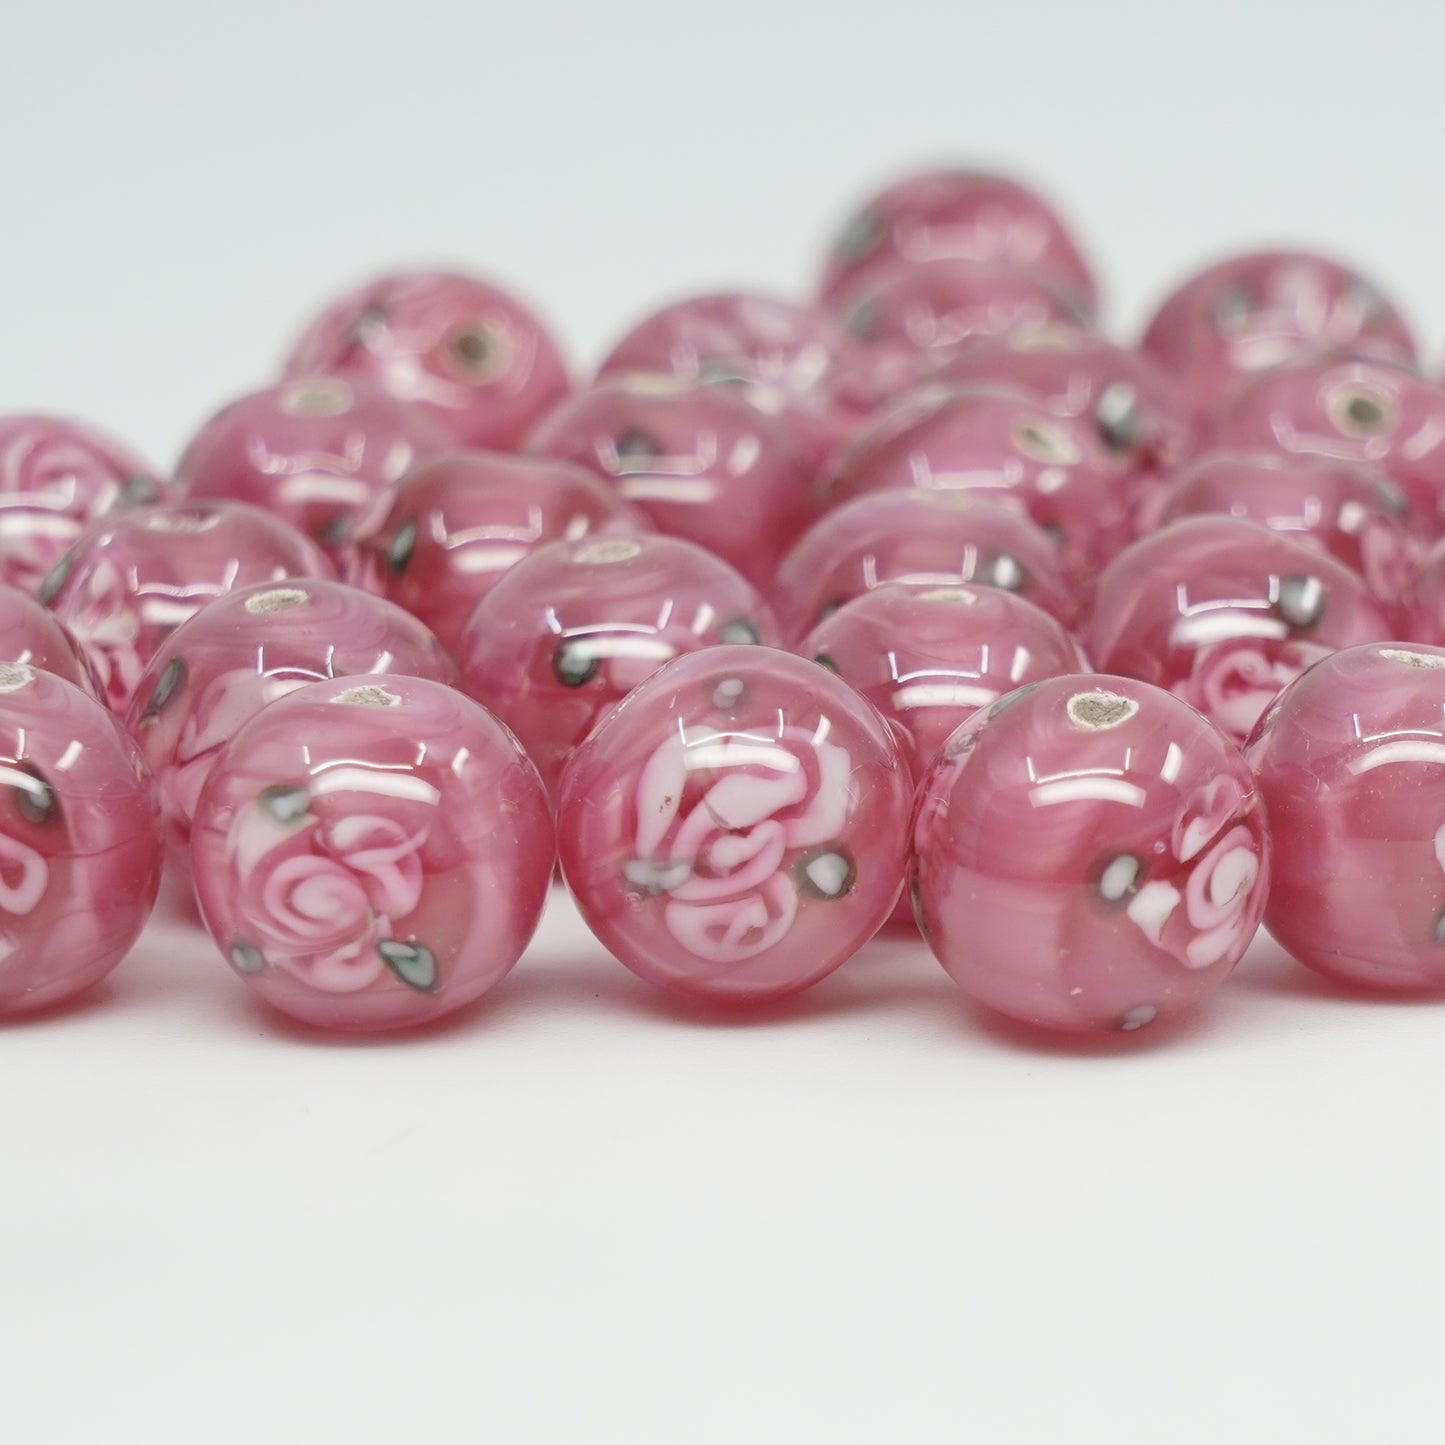 Lampwork HandMade Beads, Pink with Flower, Glass, Czech Republic